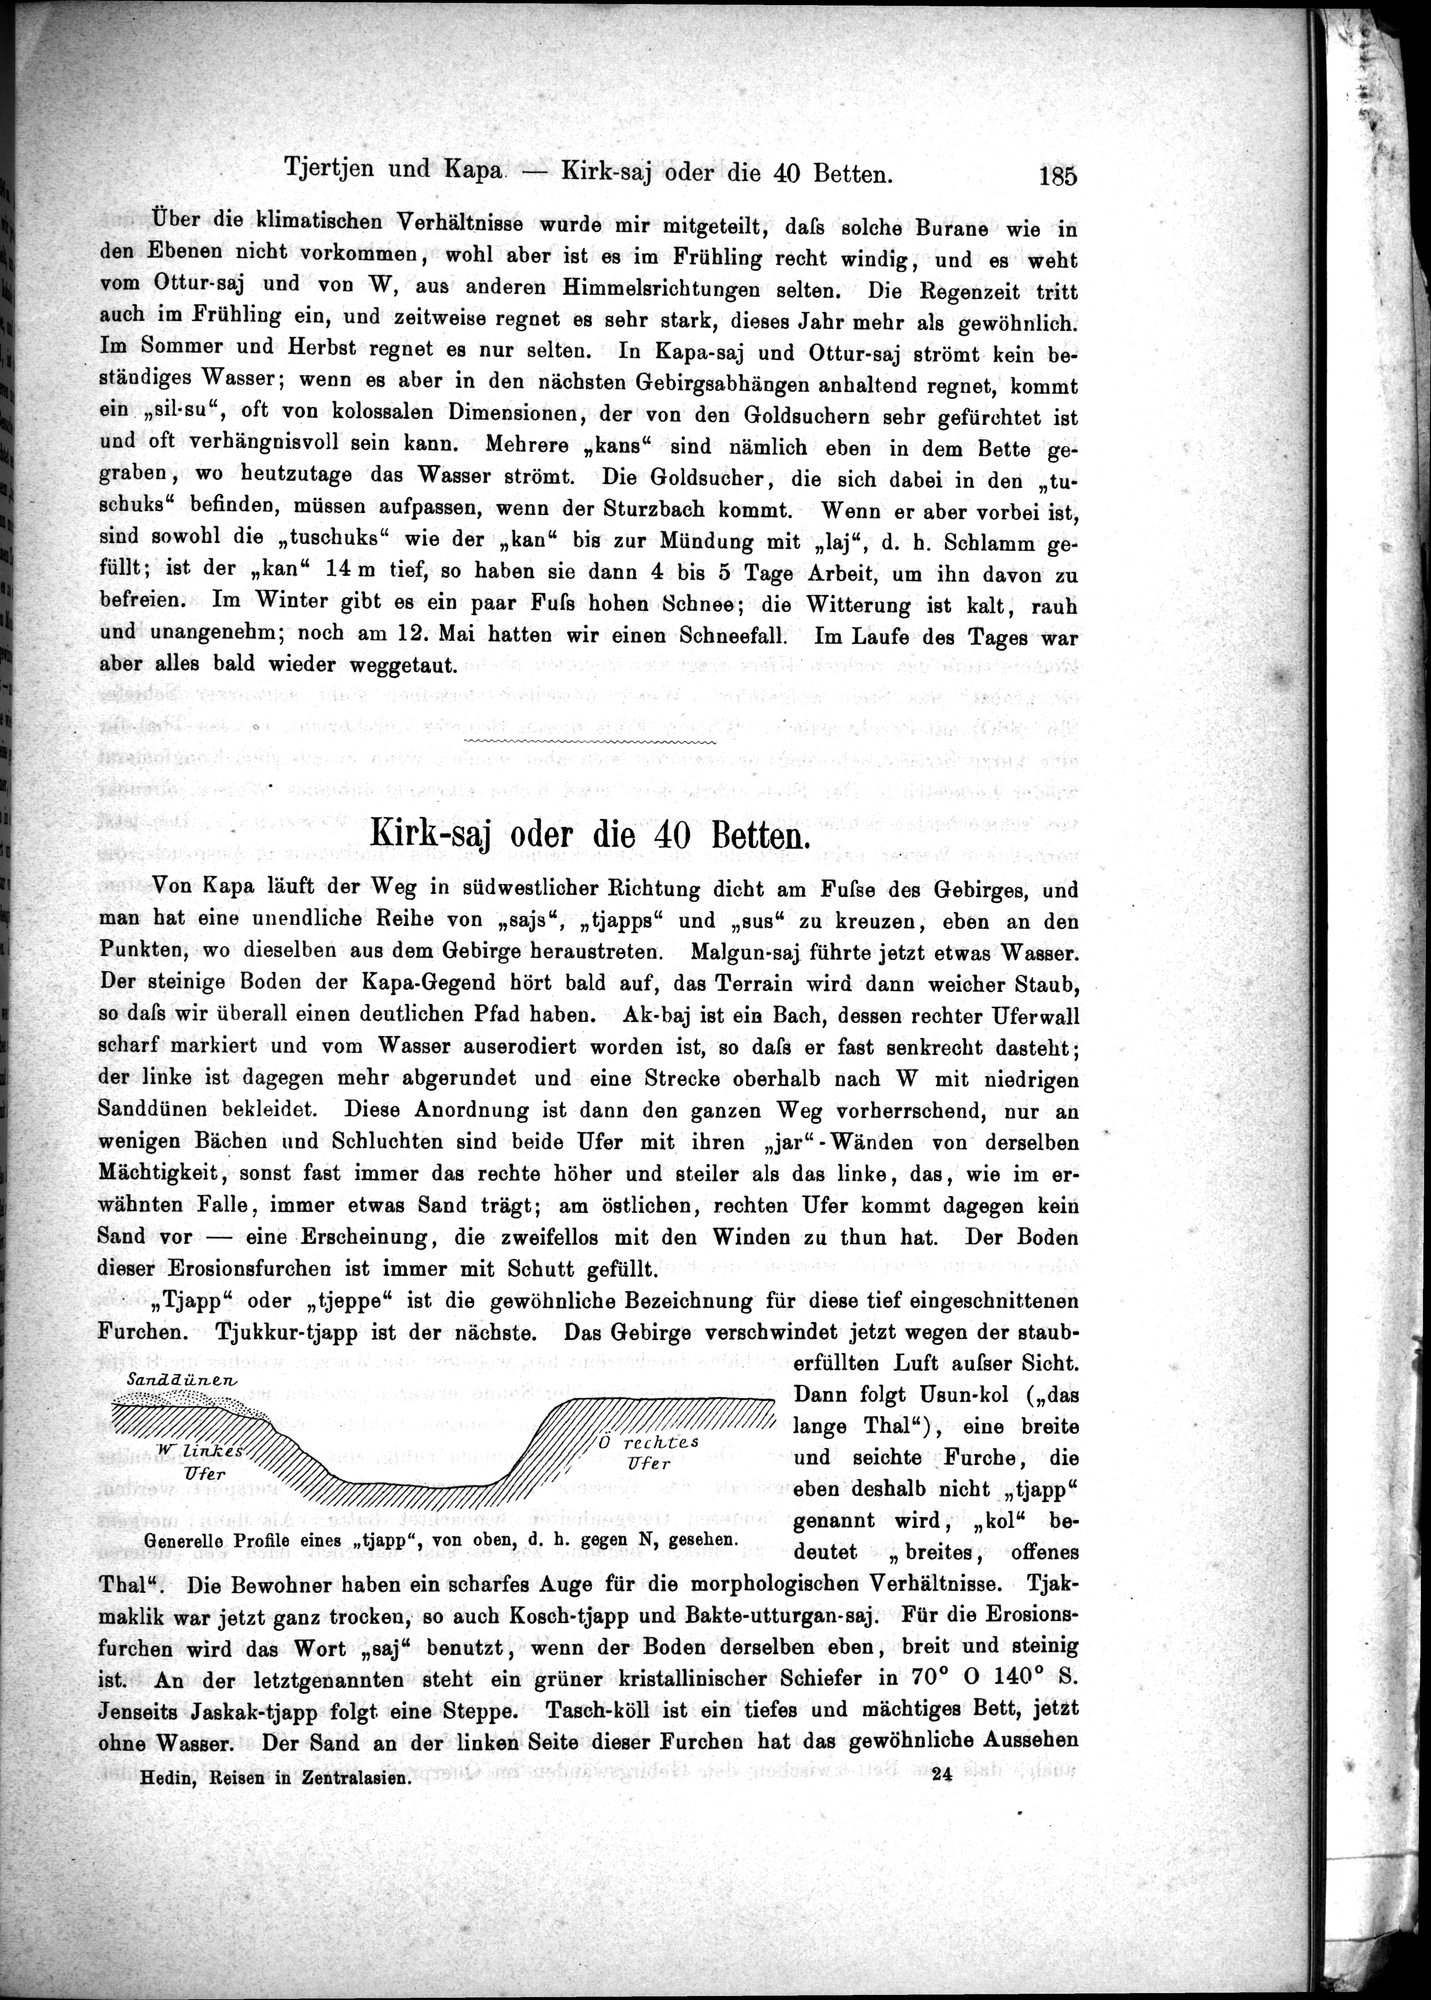 Die Geographische-Wissenschaftlichen Ergebnisse meiner Reisen in Zentralasien, 1894-1897 : vol.1 / Page 197 (Grayscale High Resolution Image)